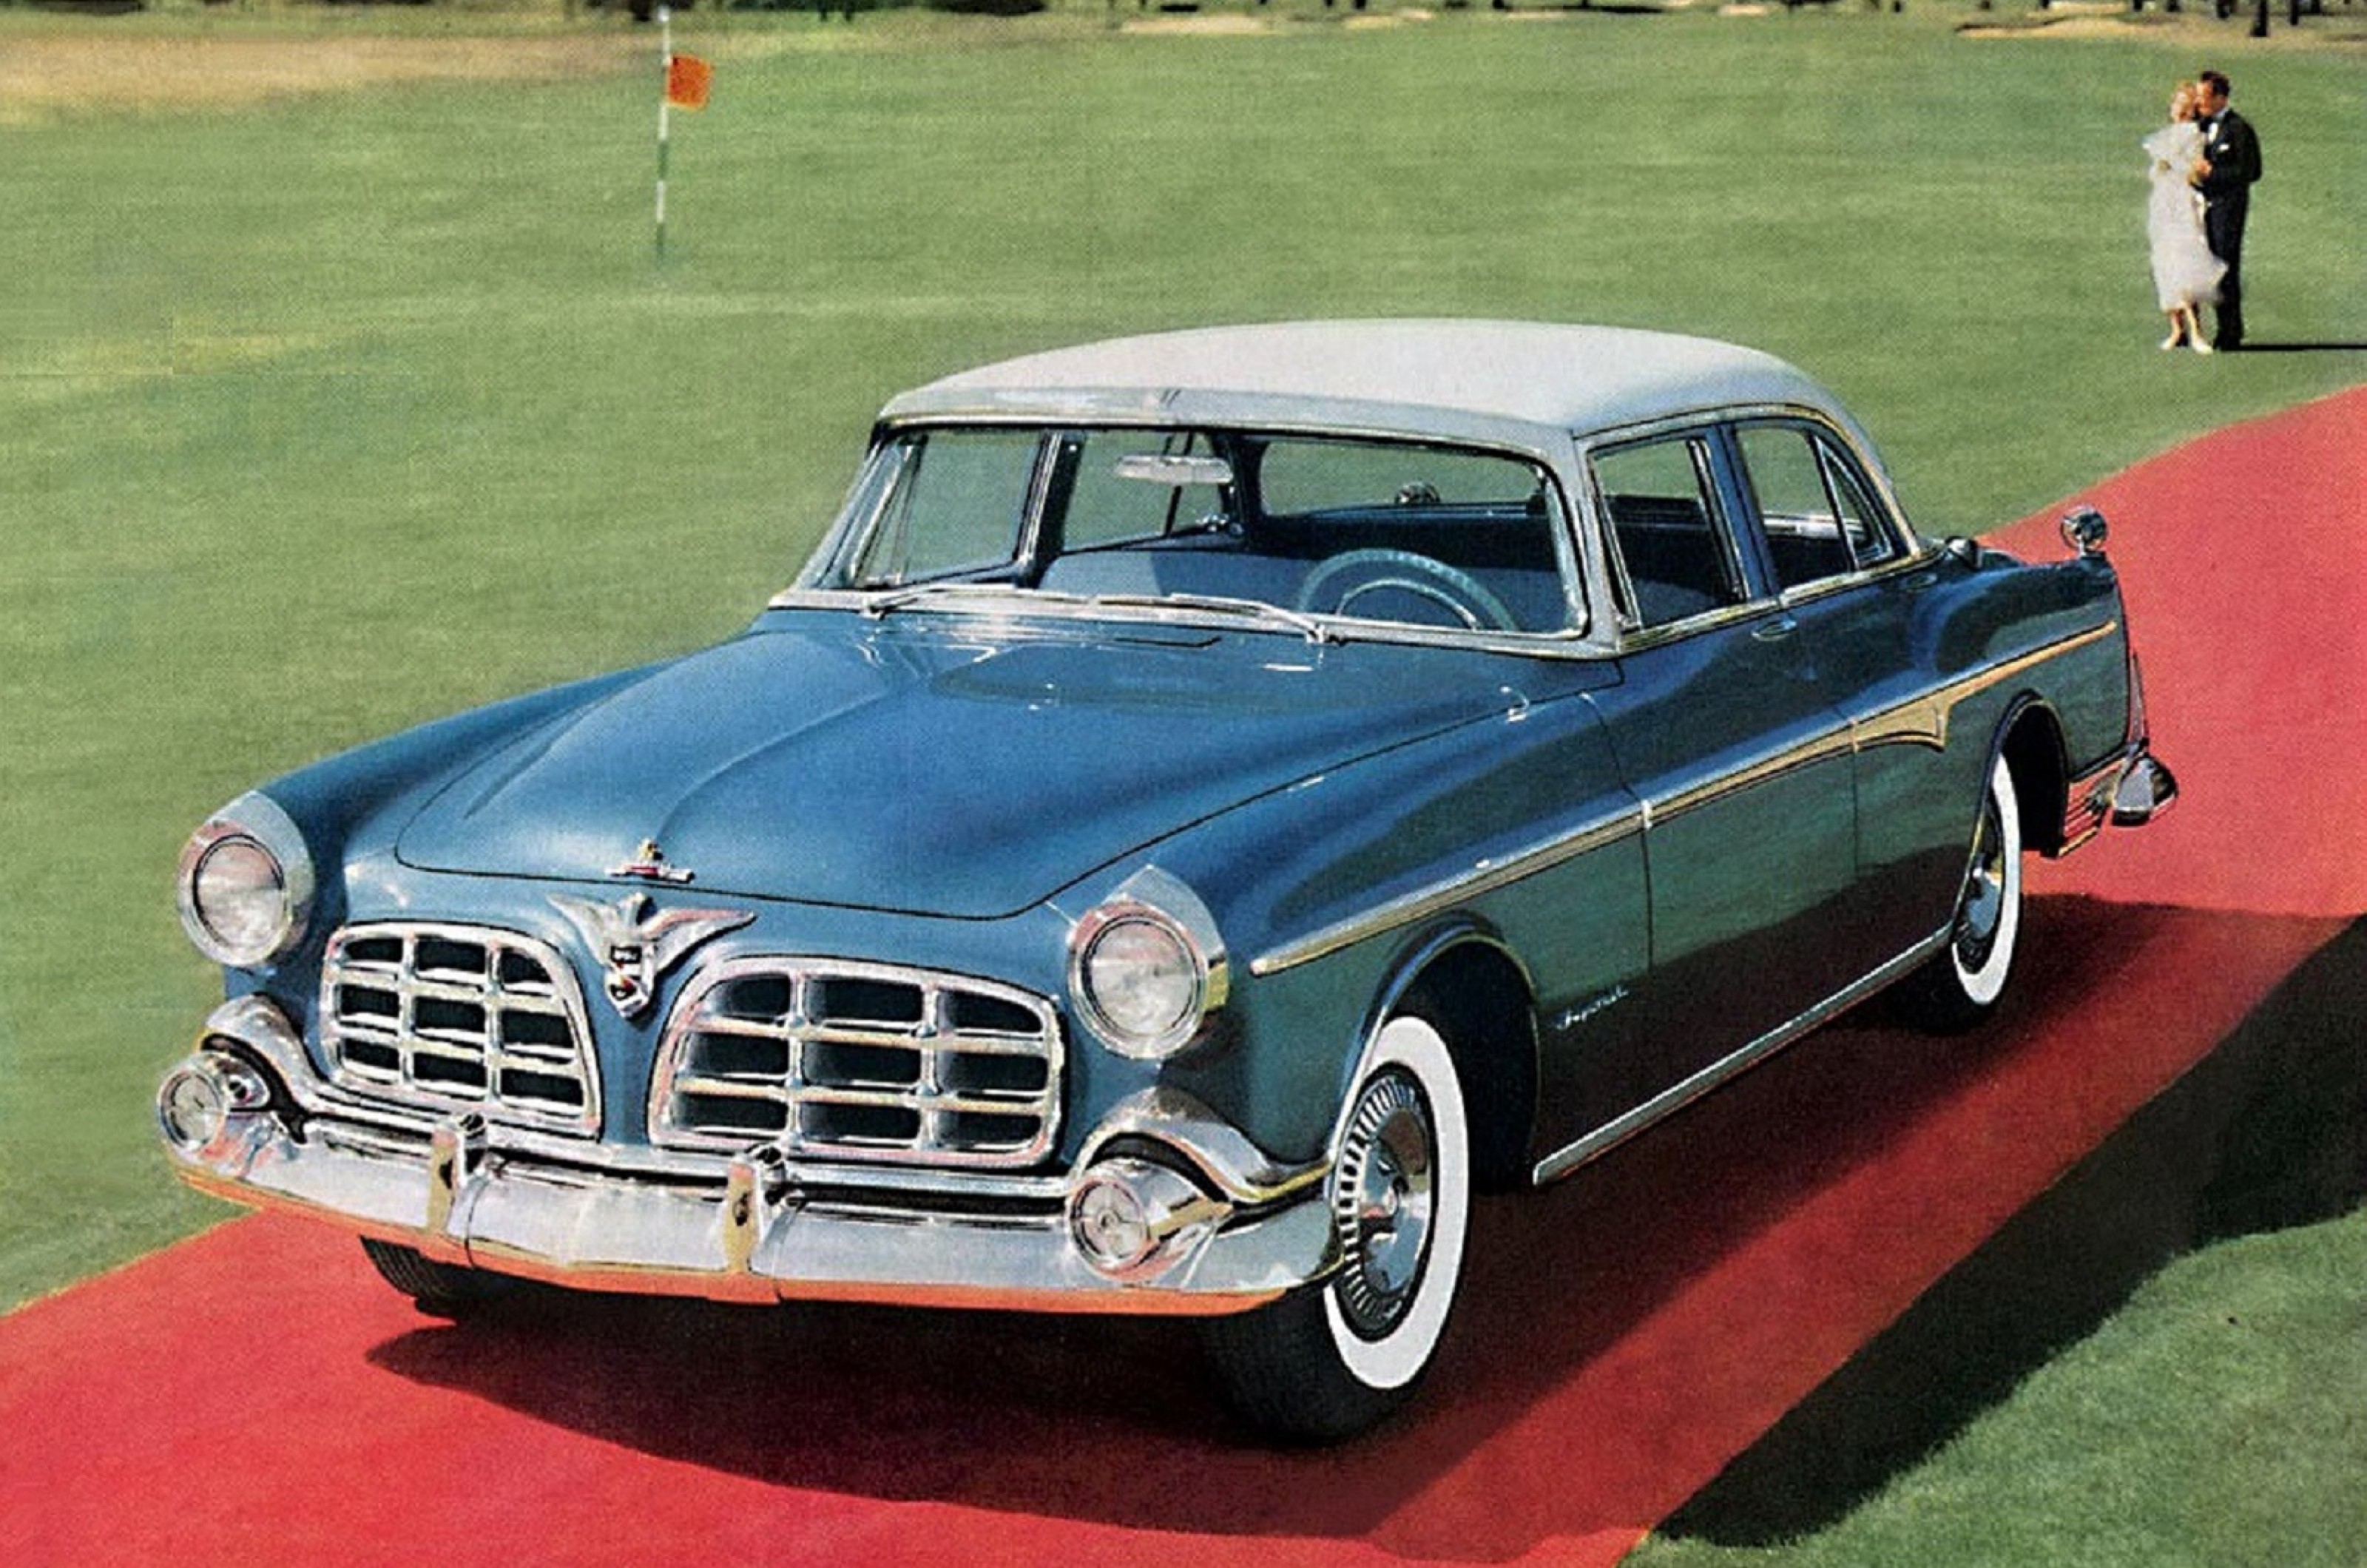 <p>Jusqu'en 1955, l'Imperial était un nom de modèle au sein du portefeuille Chrysler, mais elle est devenue une marque à part entière cette année-là. Le cœur de l'Imperial était la berline, équipée d'un V8 de 331 cm3 (5,4 litres) similaire à celui de la Chrysler C-300, mais détourné pour atteindre une puissance de 250 ch. Avec une direction assistée, des freins assistés et une boîte de vitesses automatique de série, la Sedan était mieux équipée que beaucoup de ses concurrentes européennes plus chères.</p>  <p>Une caractéristique notable de l'Imperial Sedan au cours de ses deux premières années de production sont les feux arrière "gunsight" qui se dressent fièrement sur les ailes arrière. Il s'agissait d'une aide à la sécurité et d'un moyen pour le conducteur d'évaluer plus facilement l'arrière de la longue berline lorsqu'il faisait marche arrière.</p>